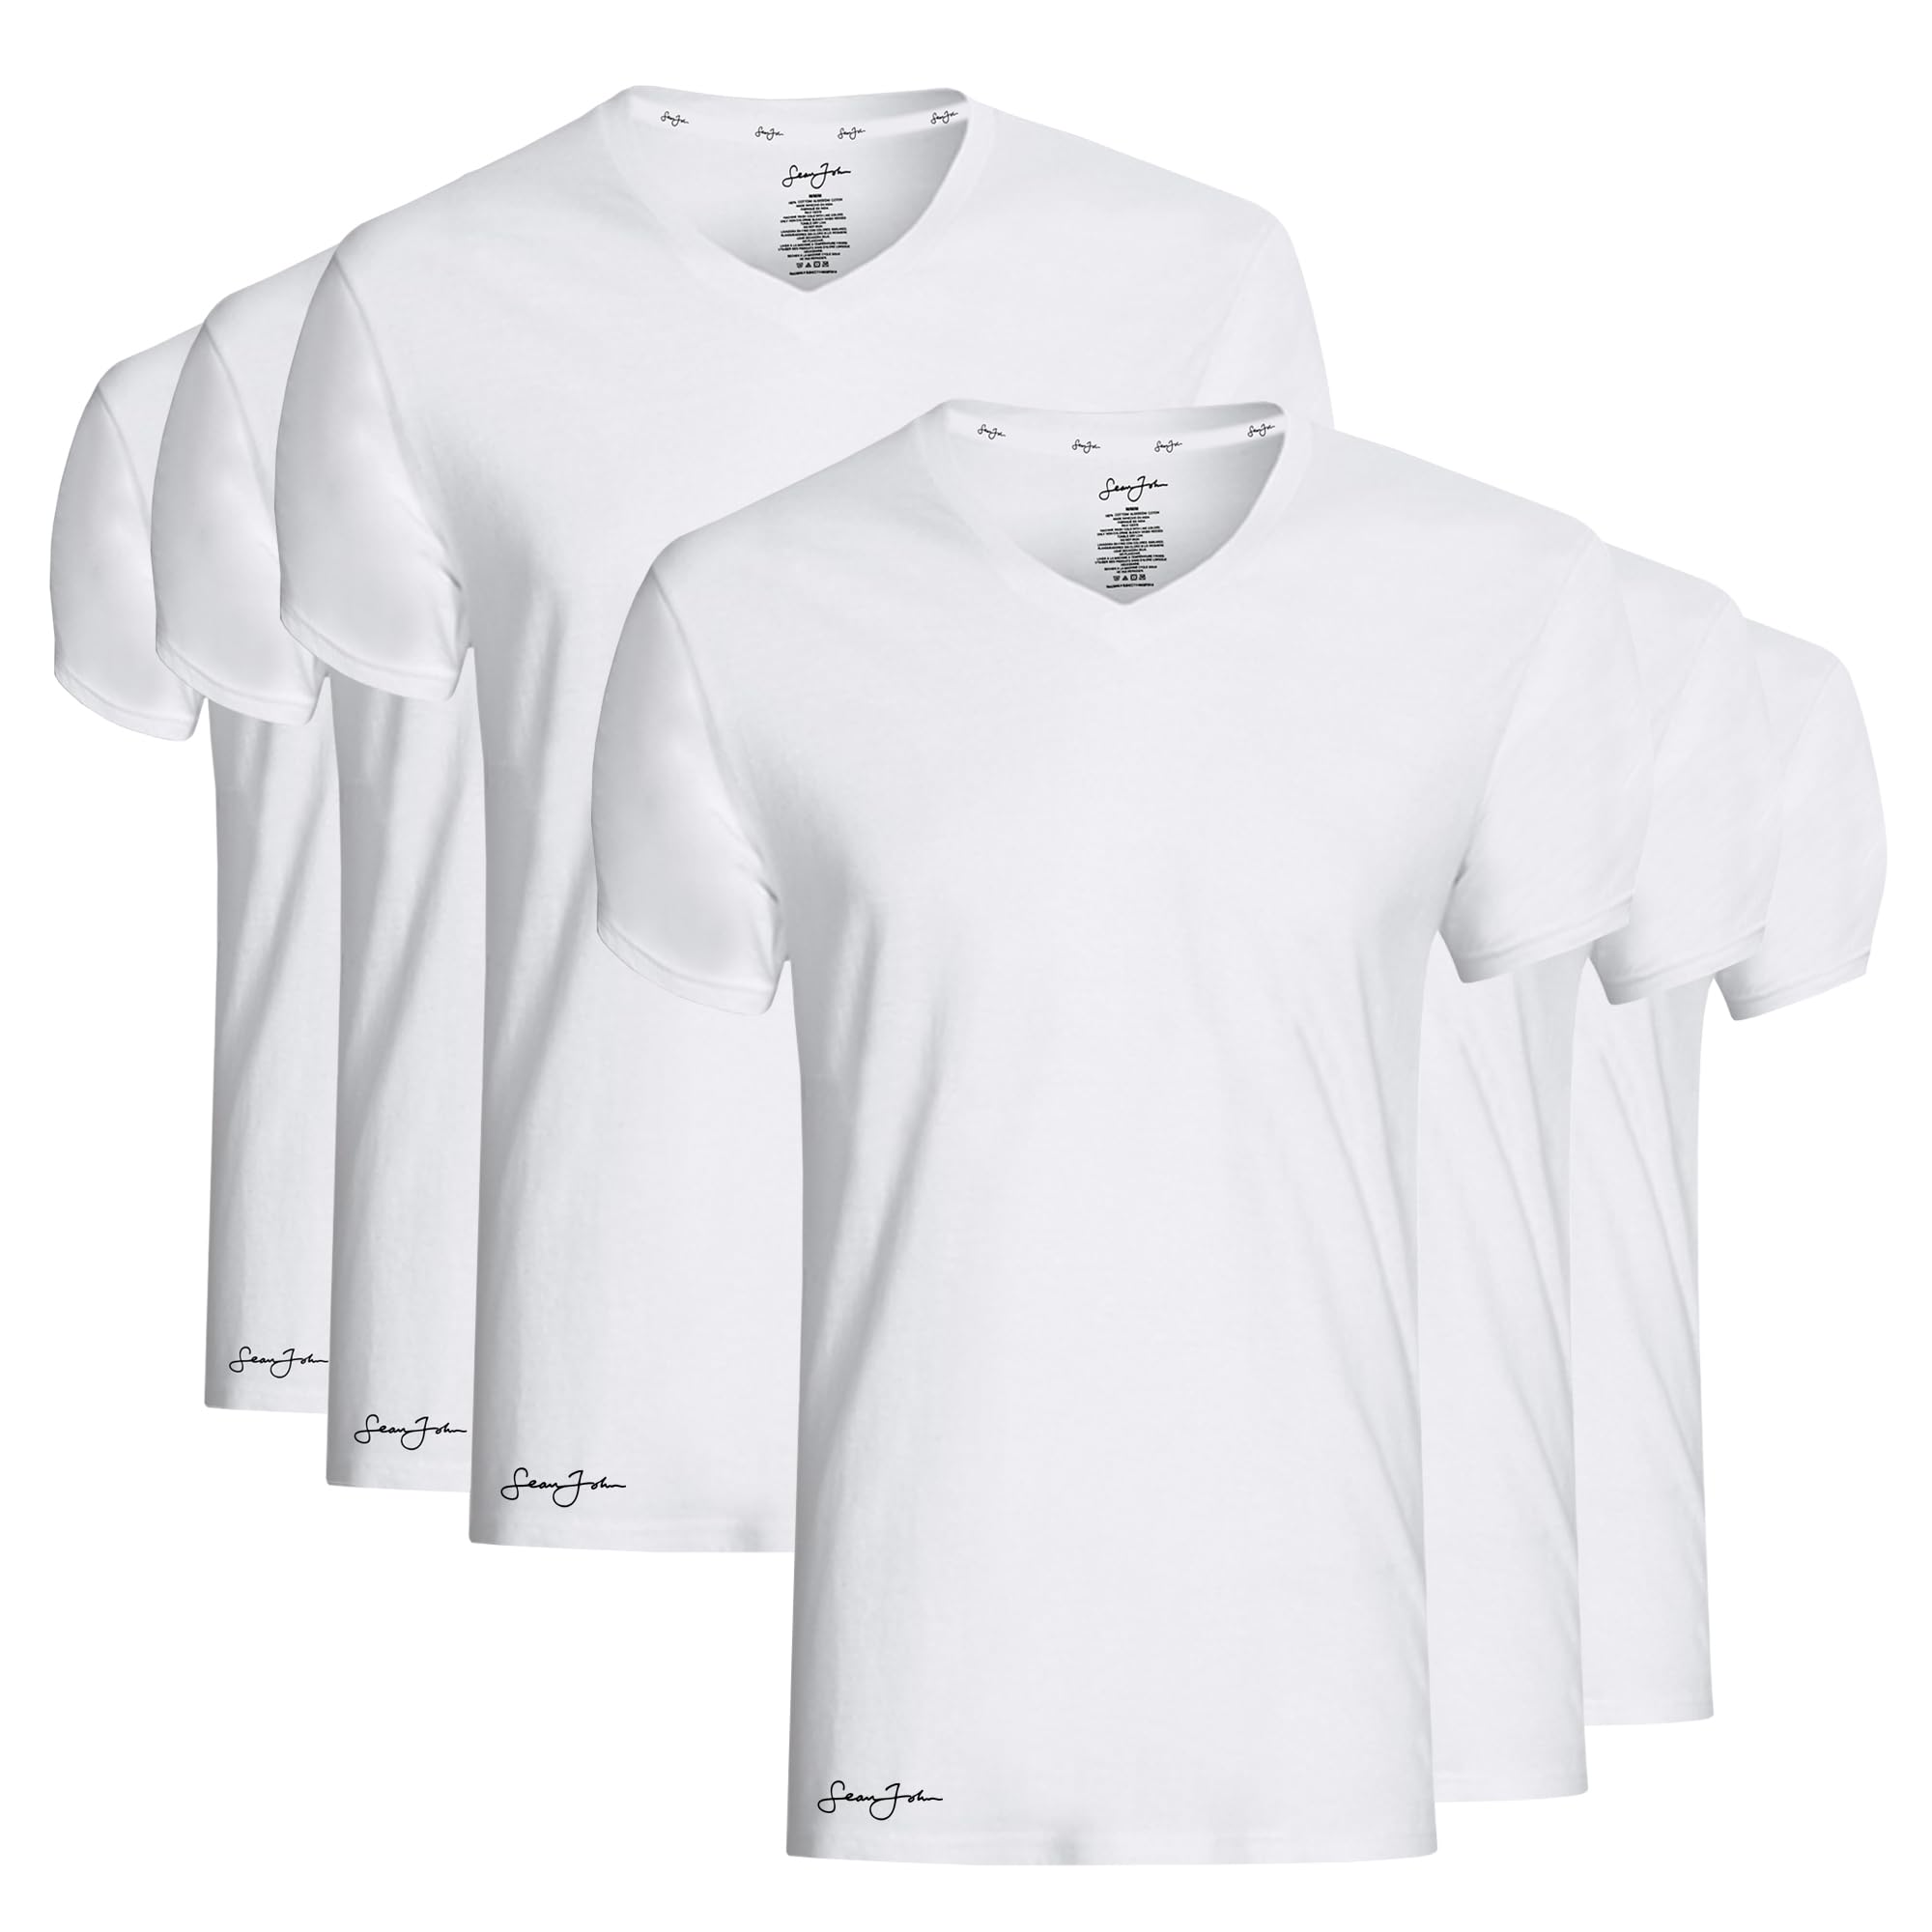 Sean John 6er-Pack Herren Essential V-Ausschnitt Unterhemden - Atmungsaktiv, Tagless, Baumwolle Herren T-Shirt - T-Shirts für Männer Pack, Weiss/opulenter Garten, L